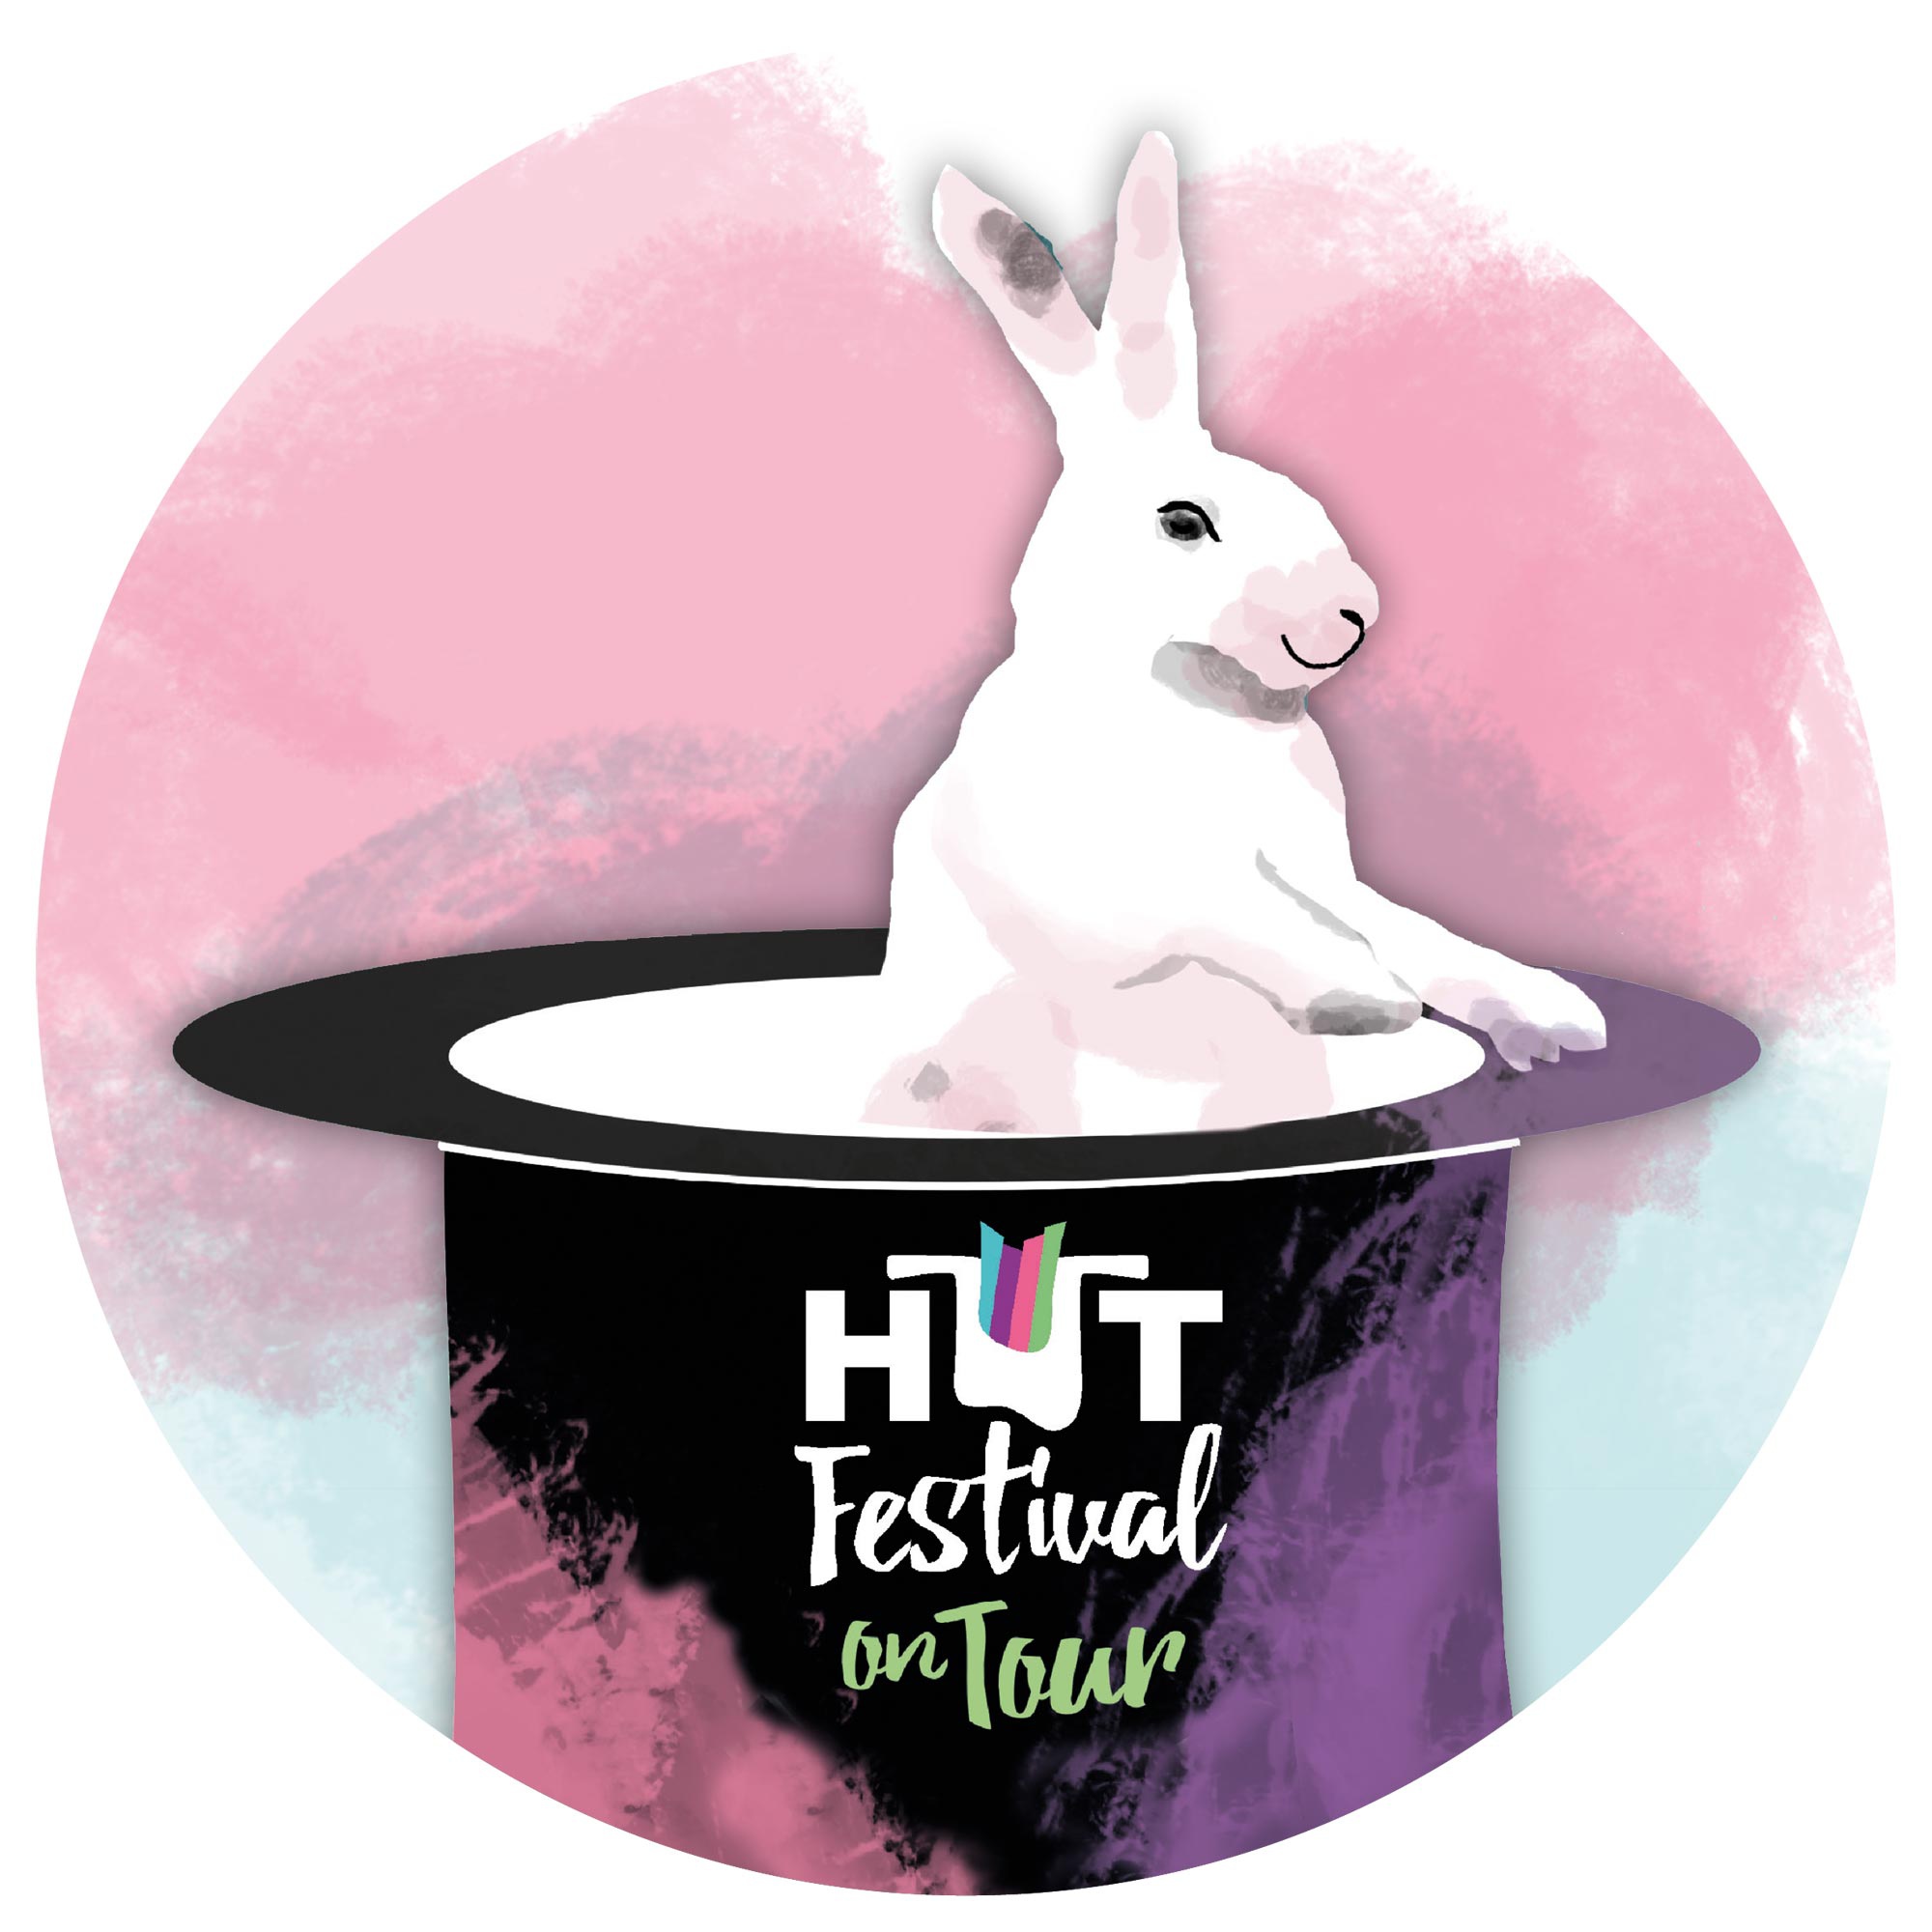 Hutfestival on Tour - Das Straßenkunstfestival tourt durch die Chemnitzer Kulturregion